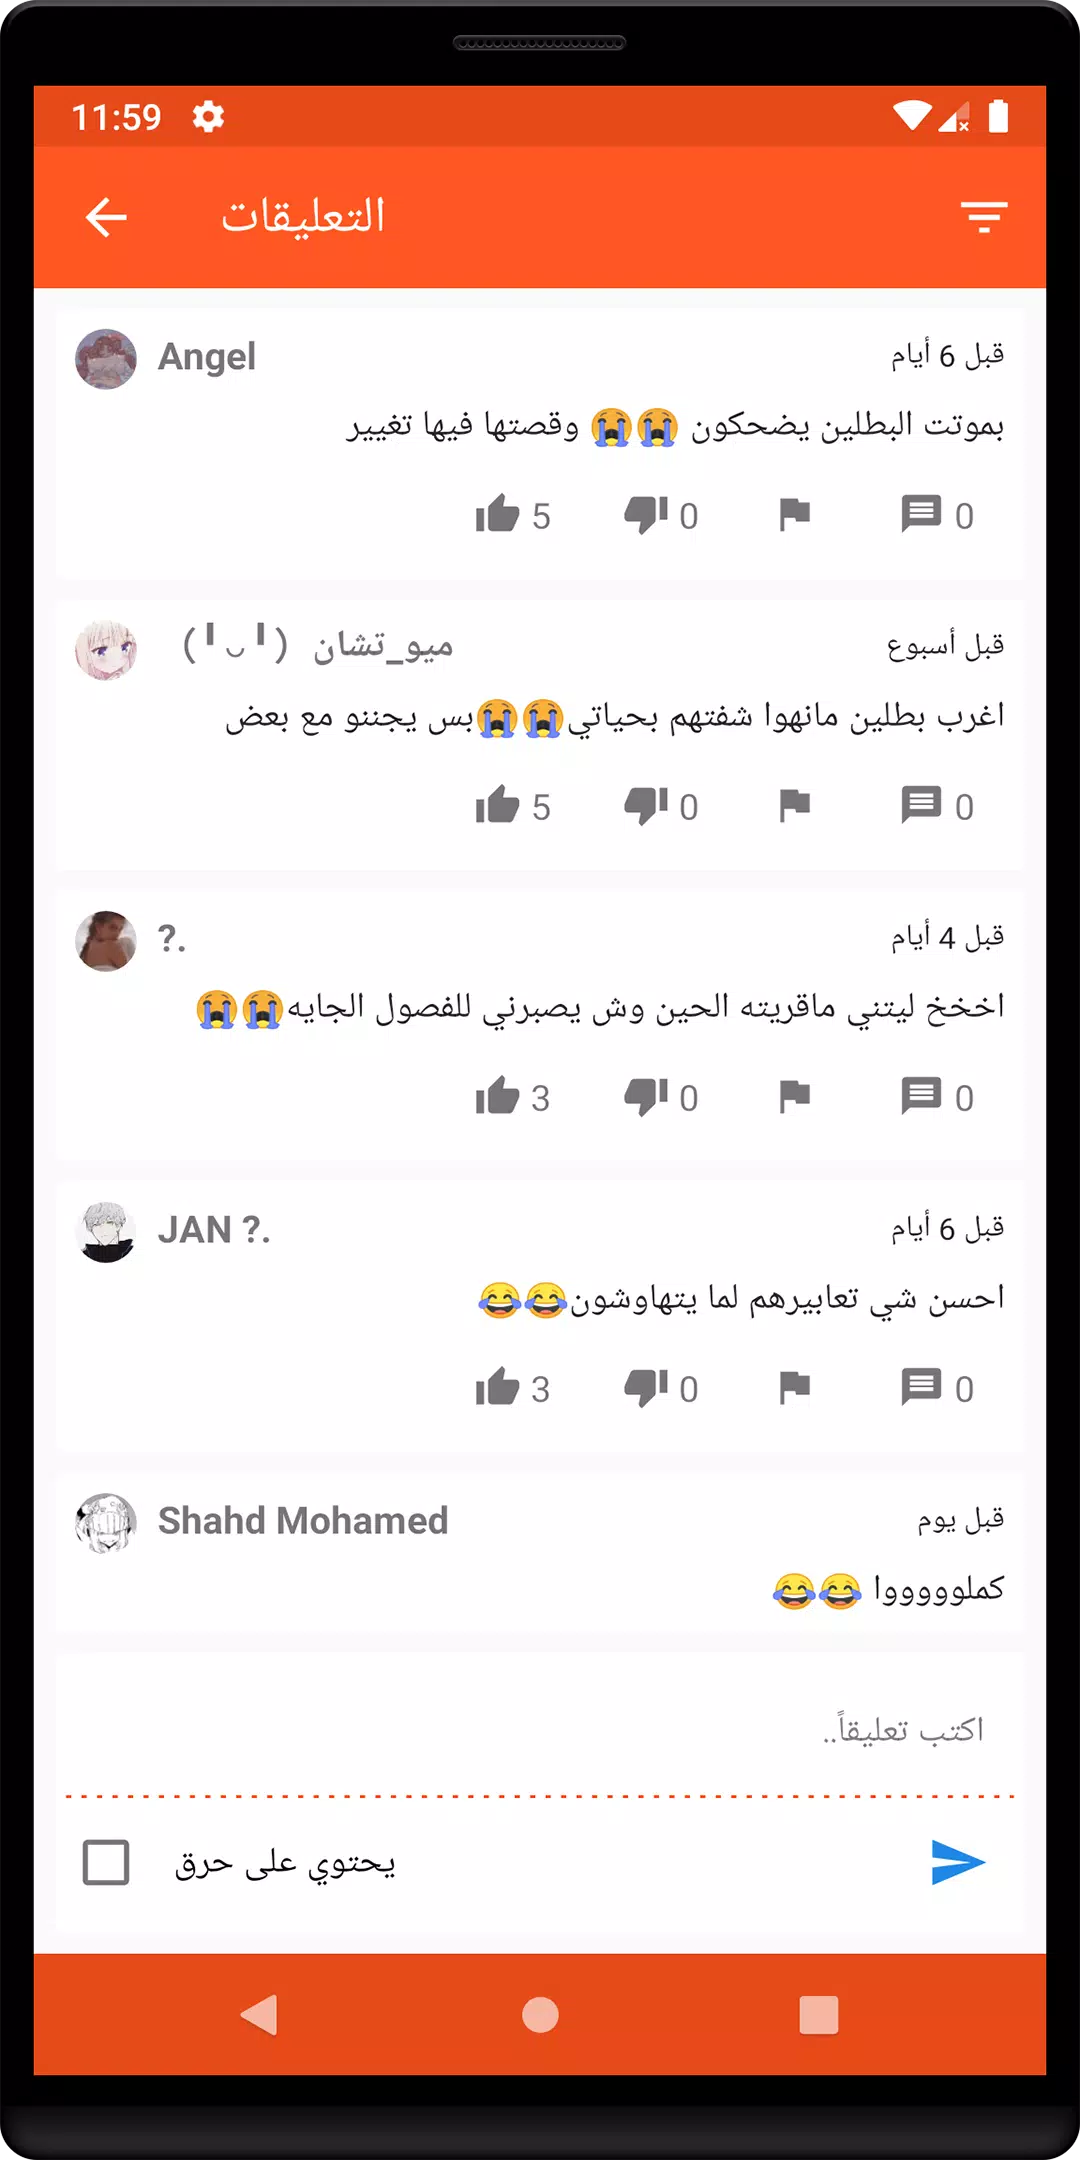 وش يعني تشي تشي